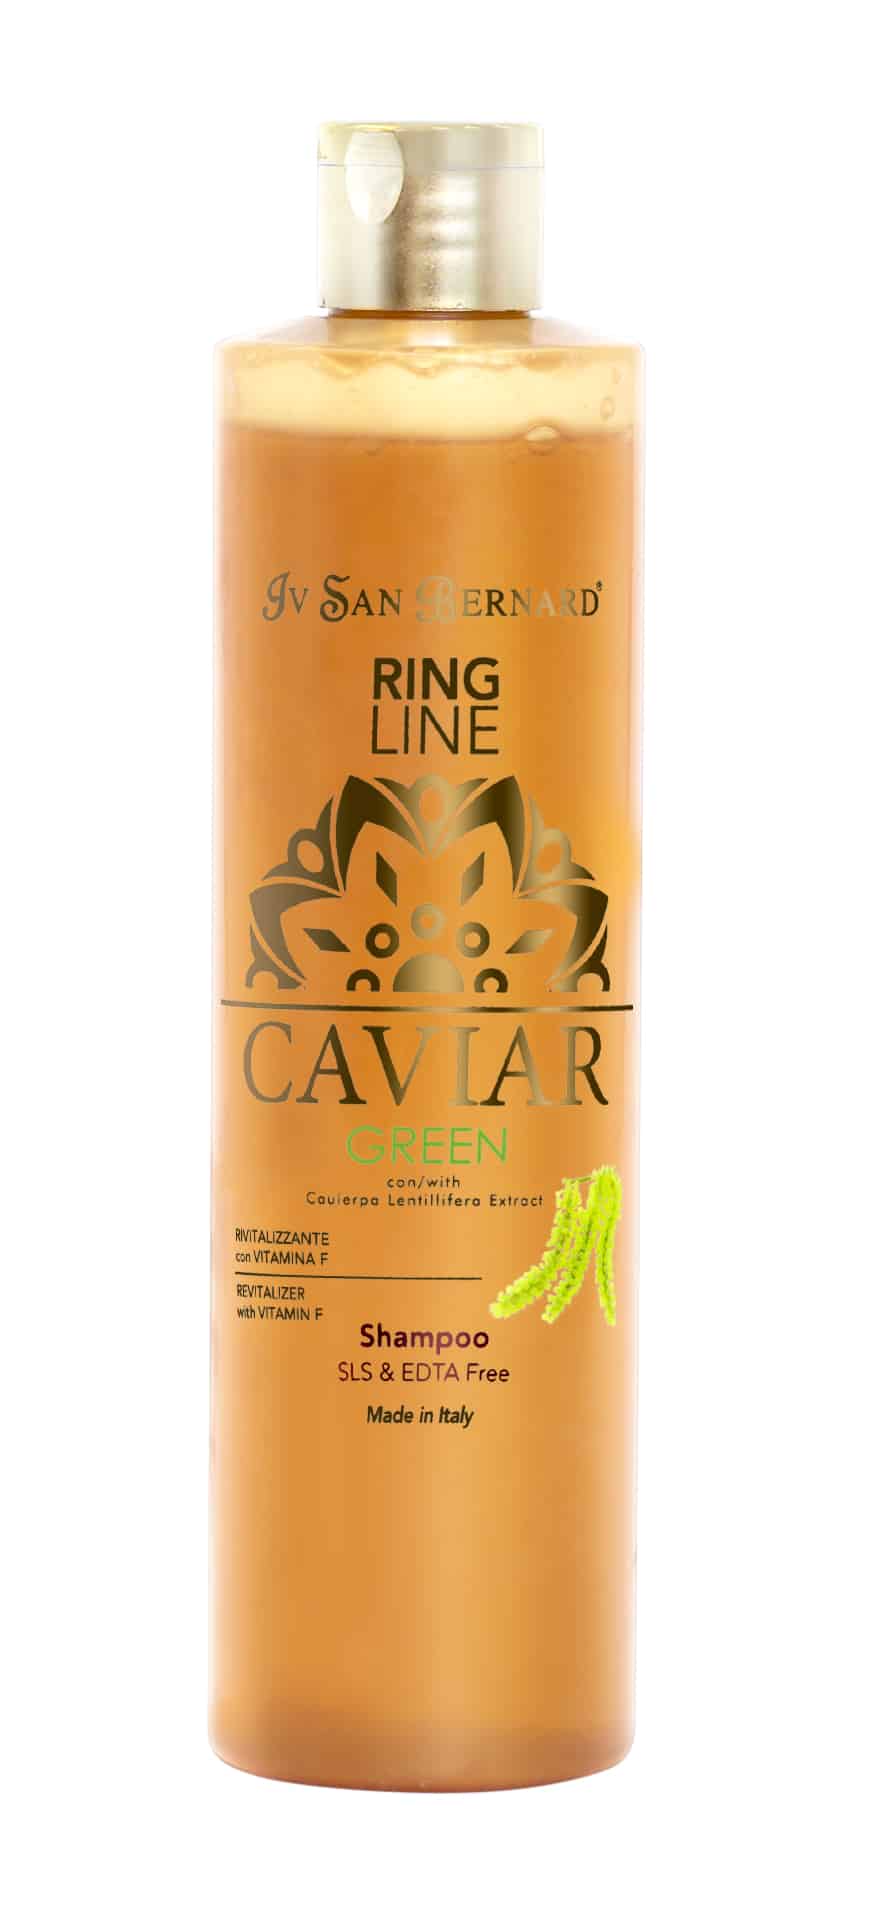 Caviar Green shampoopullo